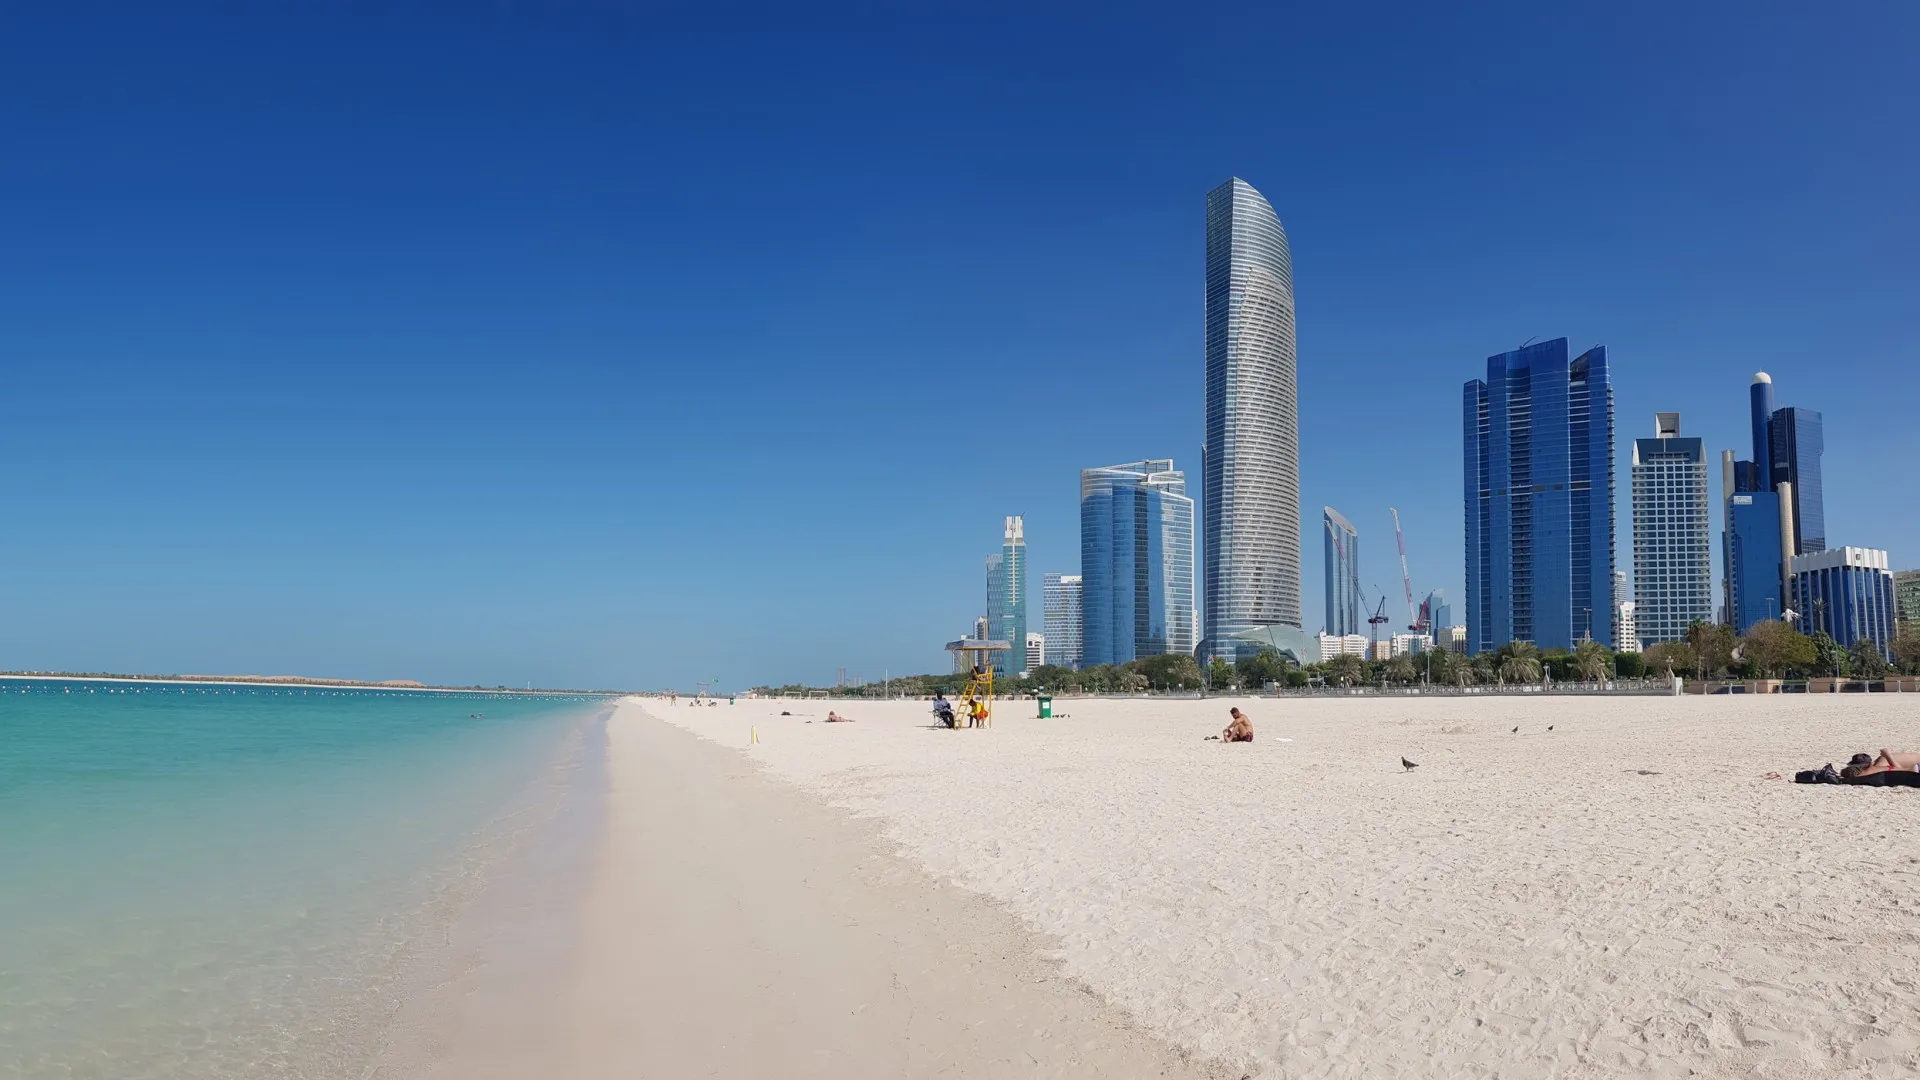 Корниш Бич - красивый пляж в Дубае с видом на небоскребы.